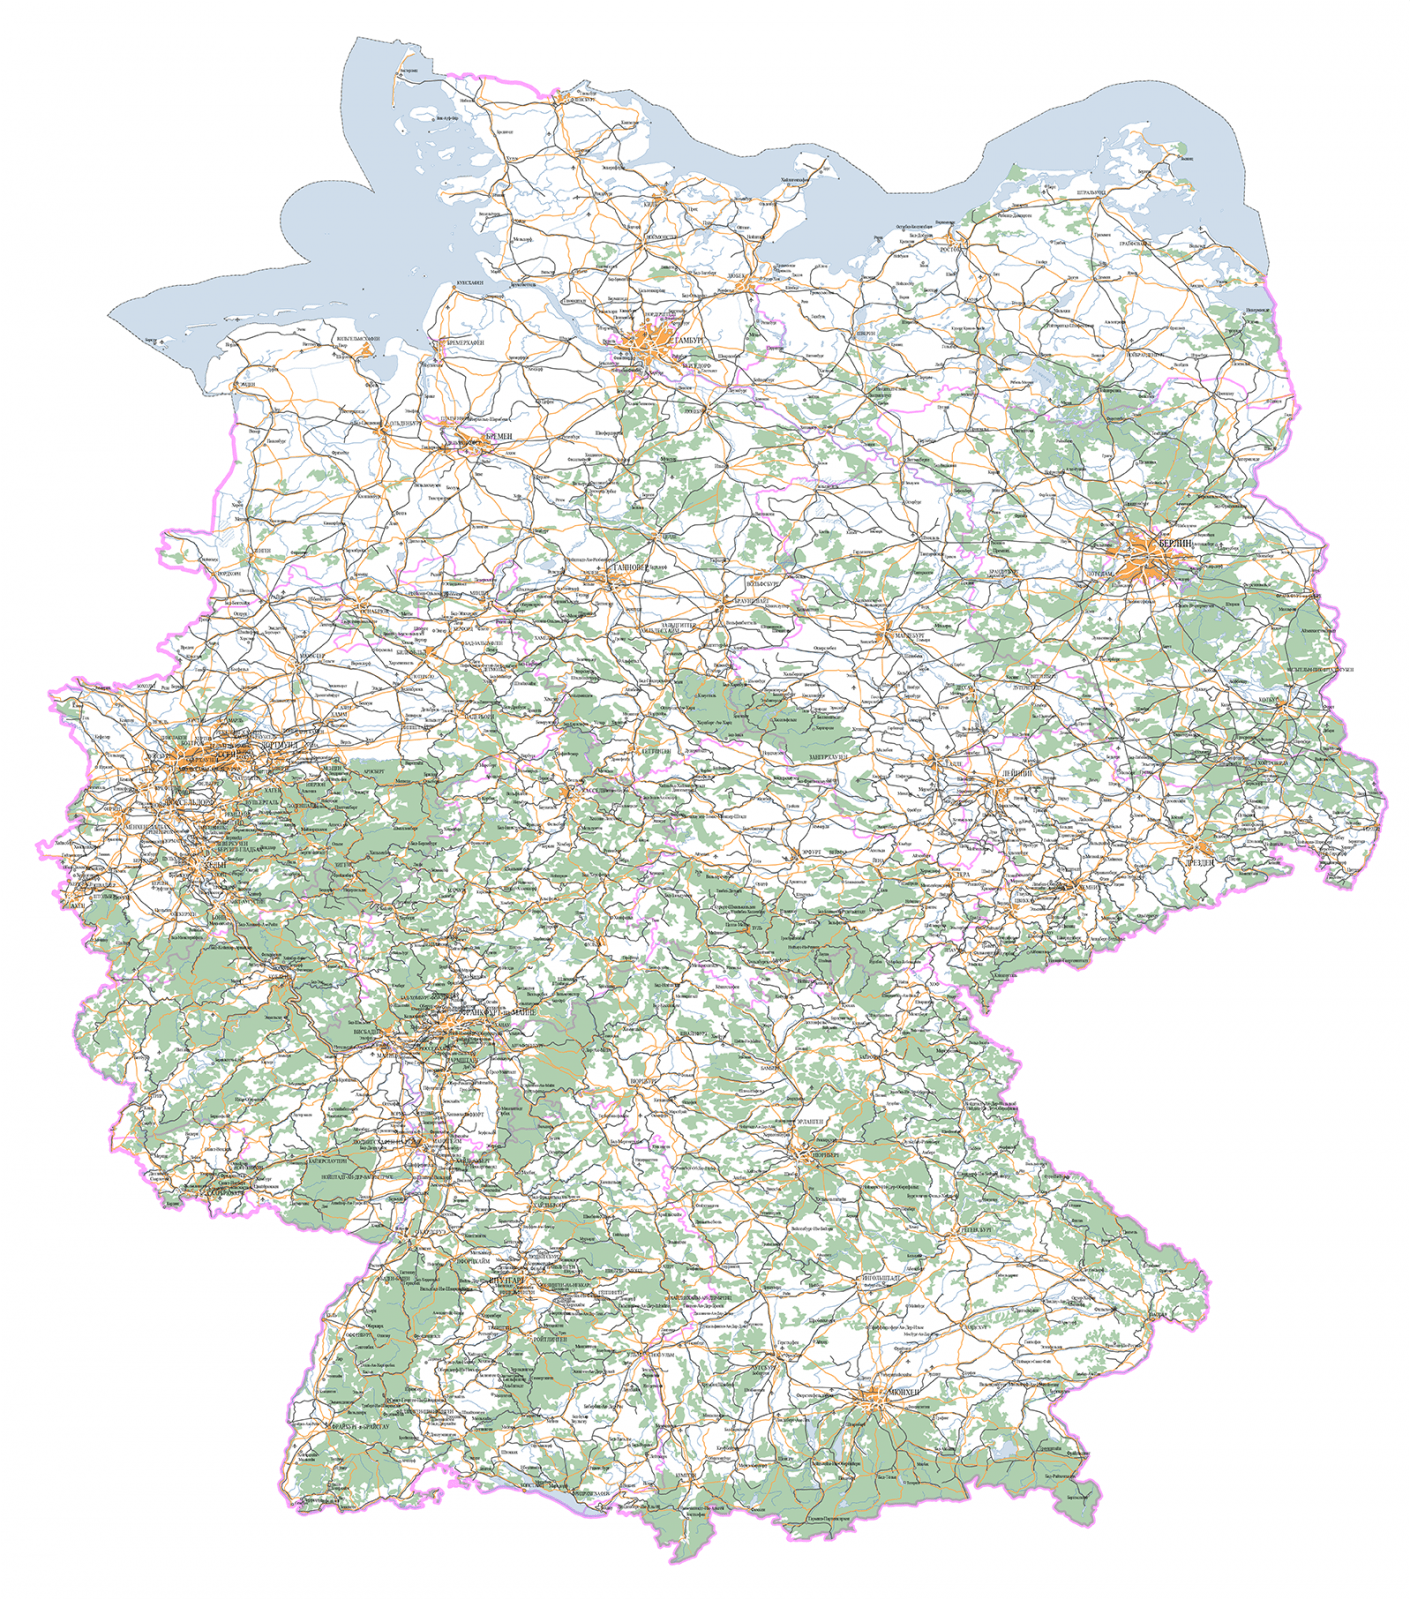 Карта Германии